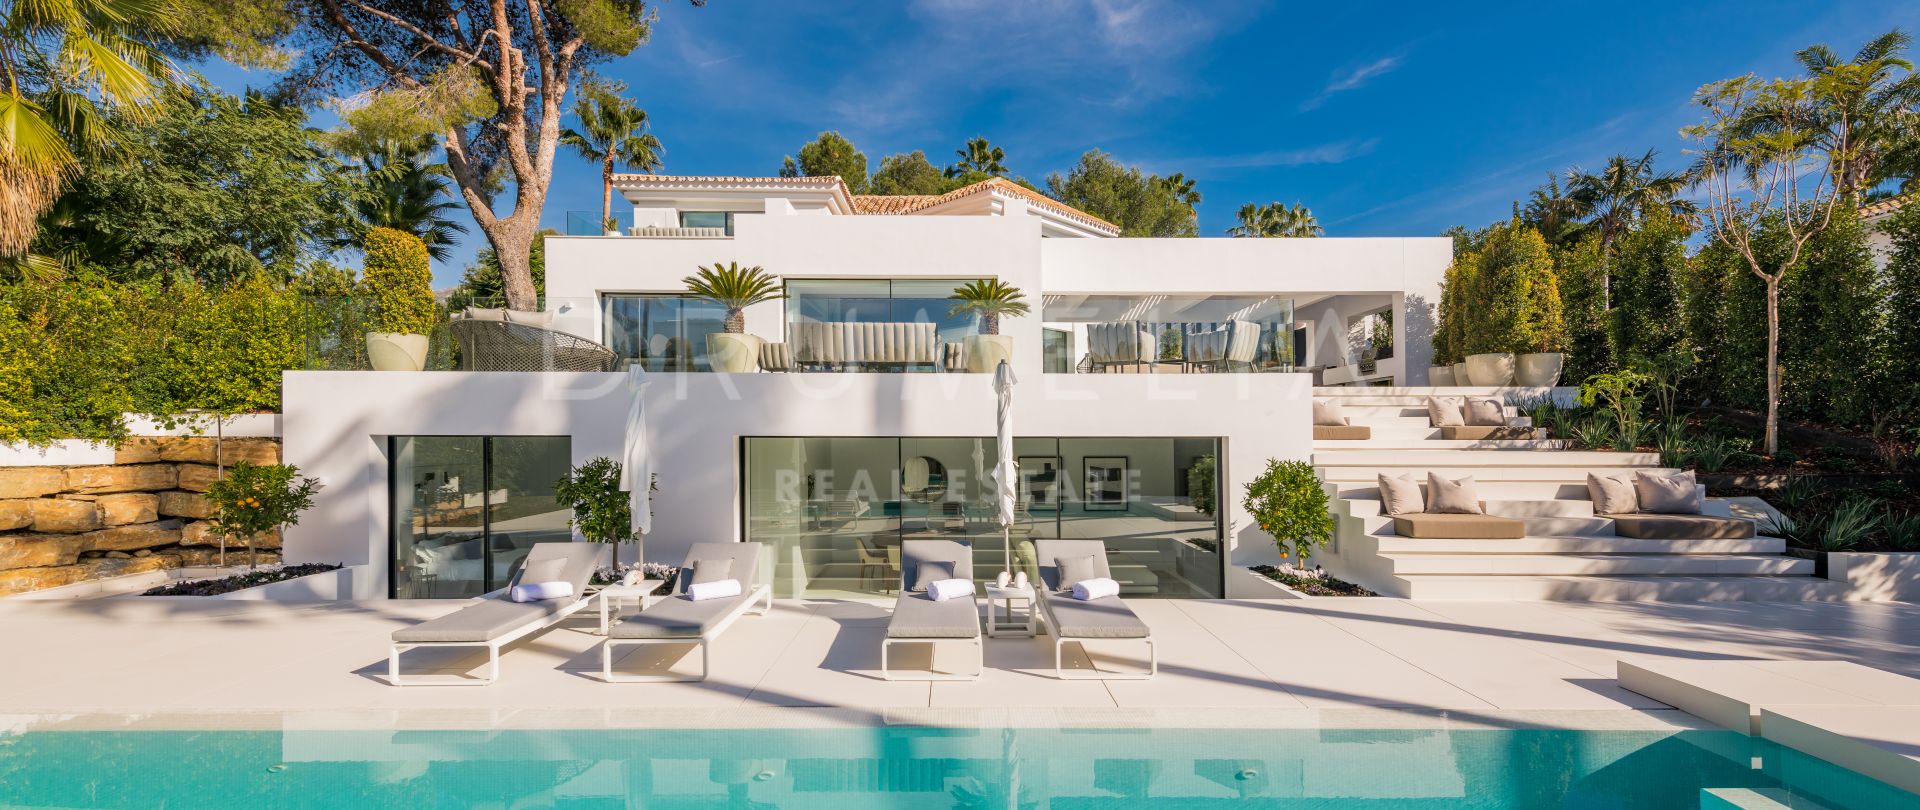 Casa Laranja - Superbe villa de luxe haut de gamme au design moderne à Nueva Andalucía, Marbella